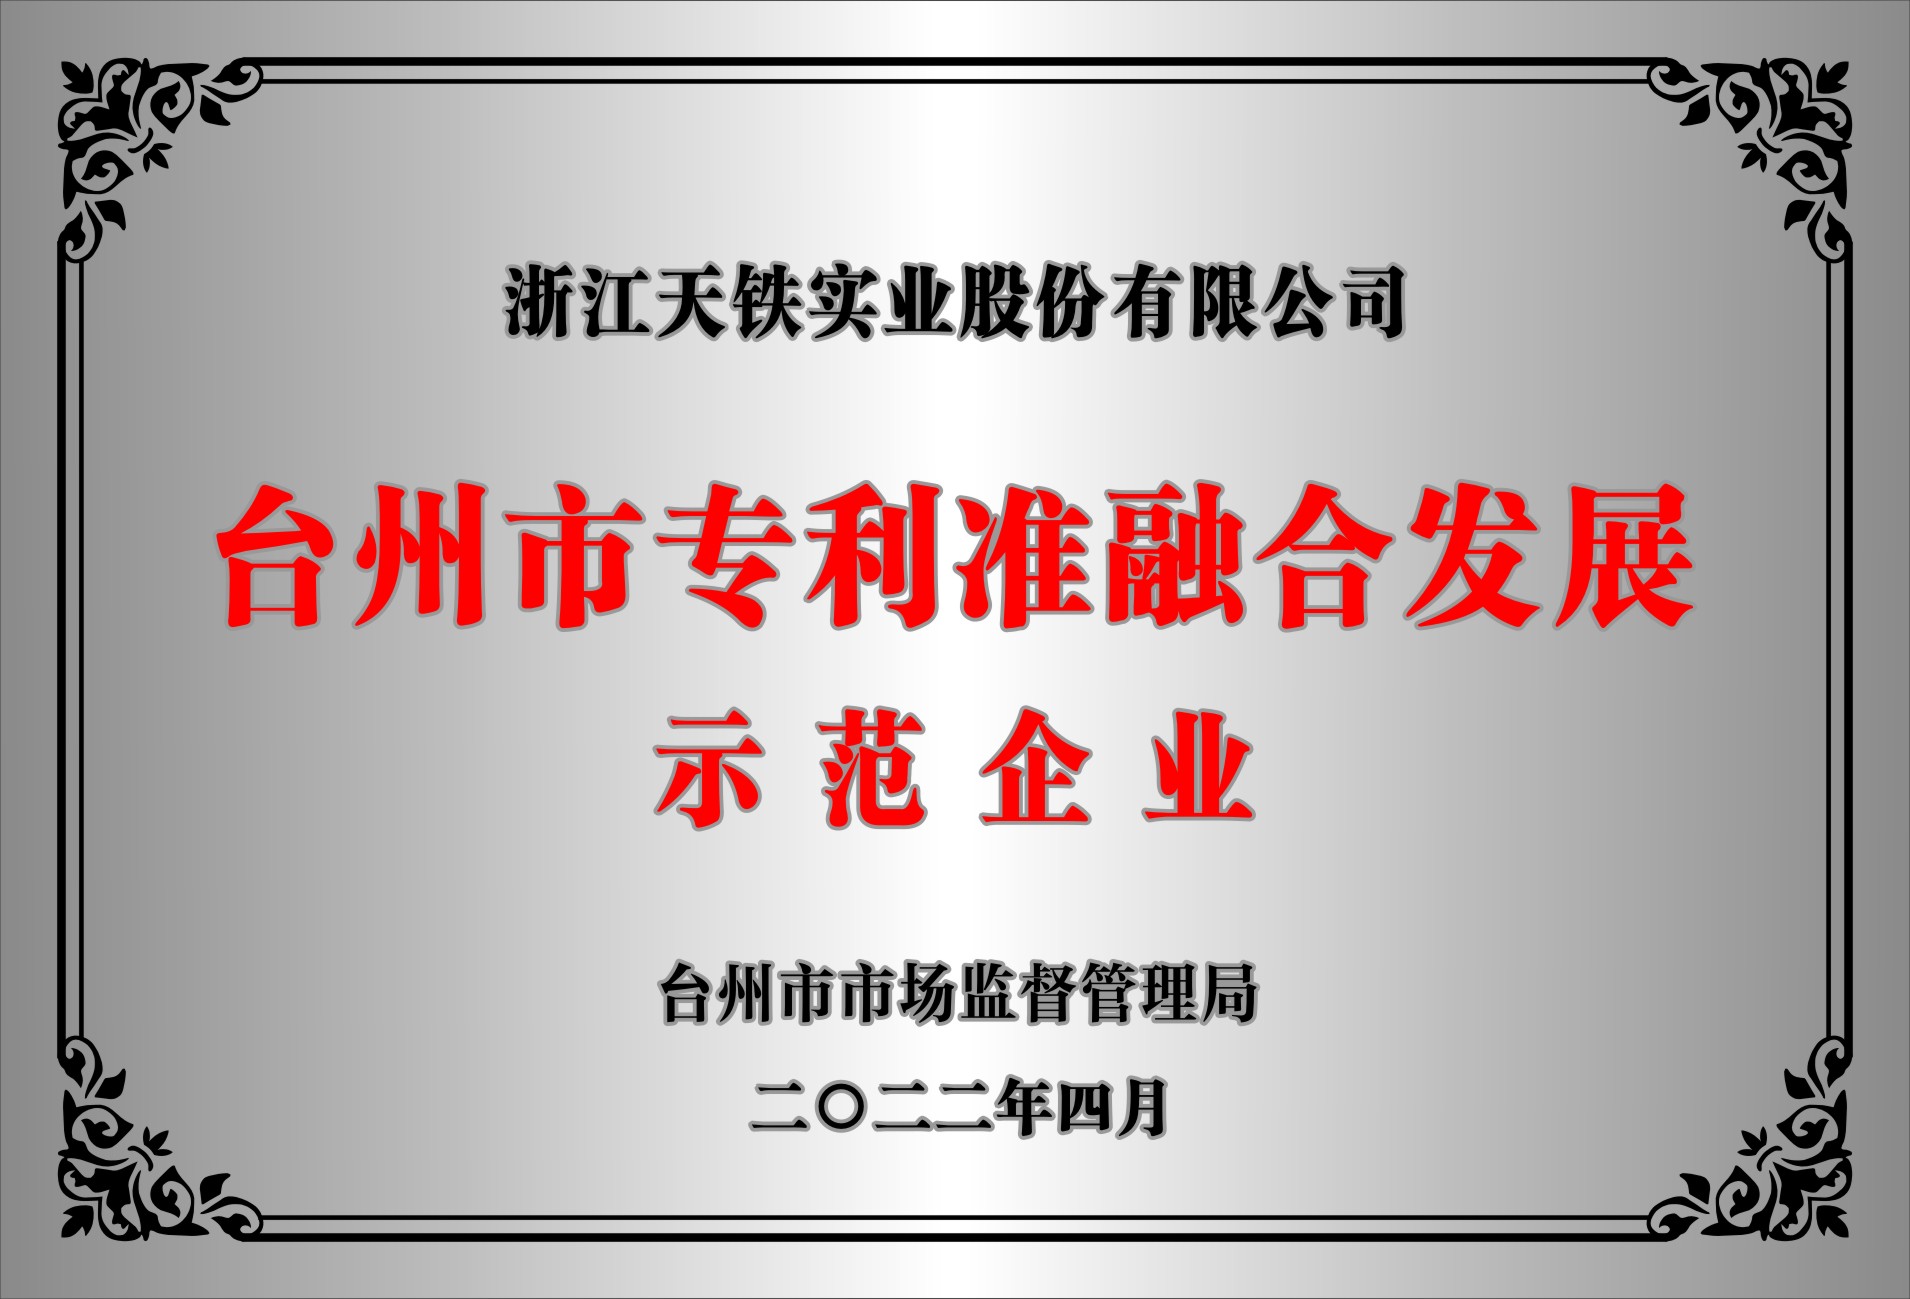 臺州市專利標準融合發展示范企業